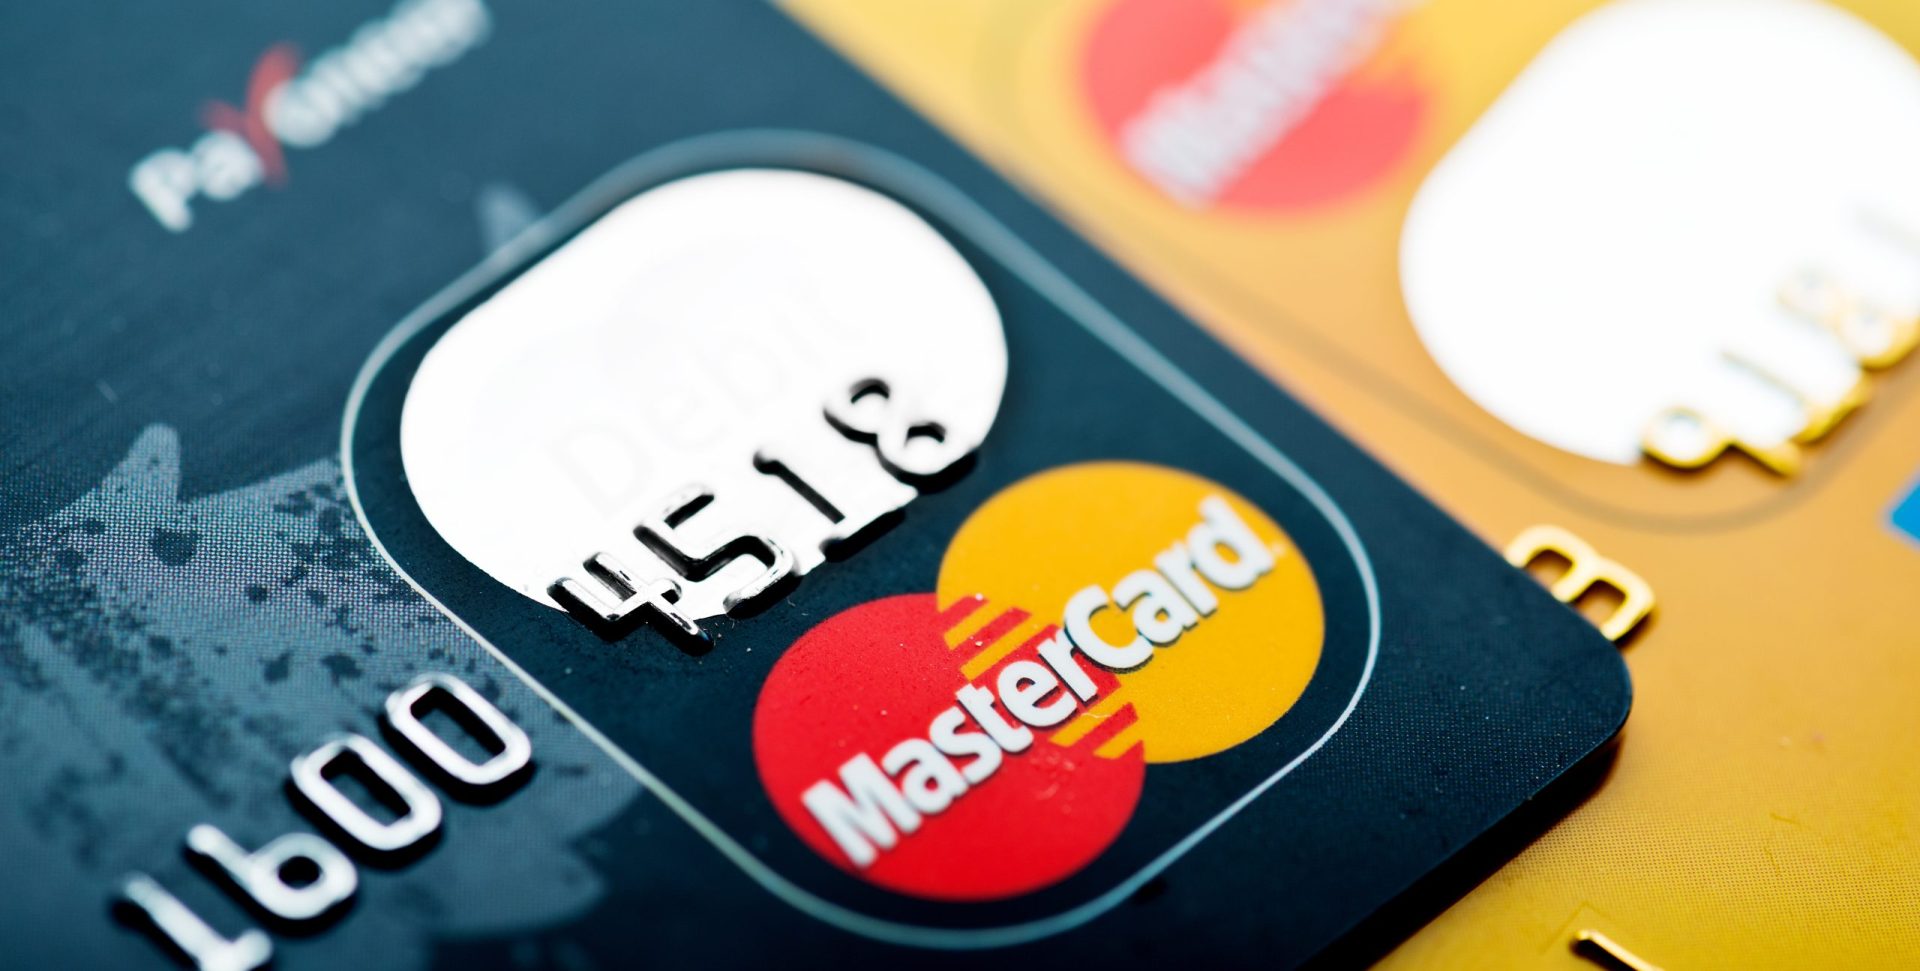 Bruxelas acusa MasterCard de impor taxas demasiado altas